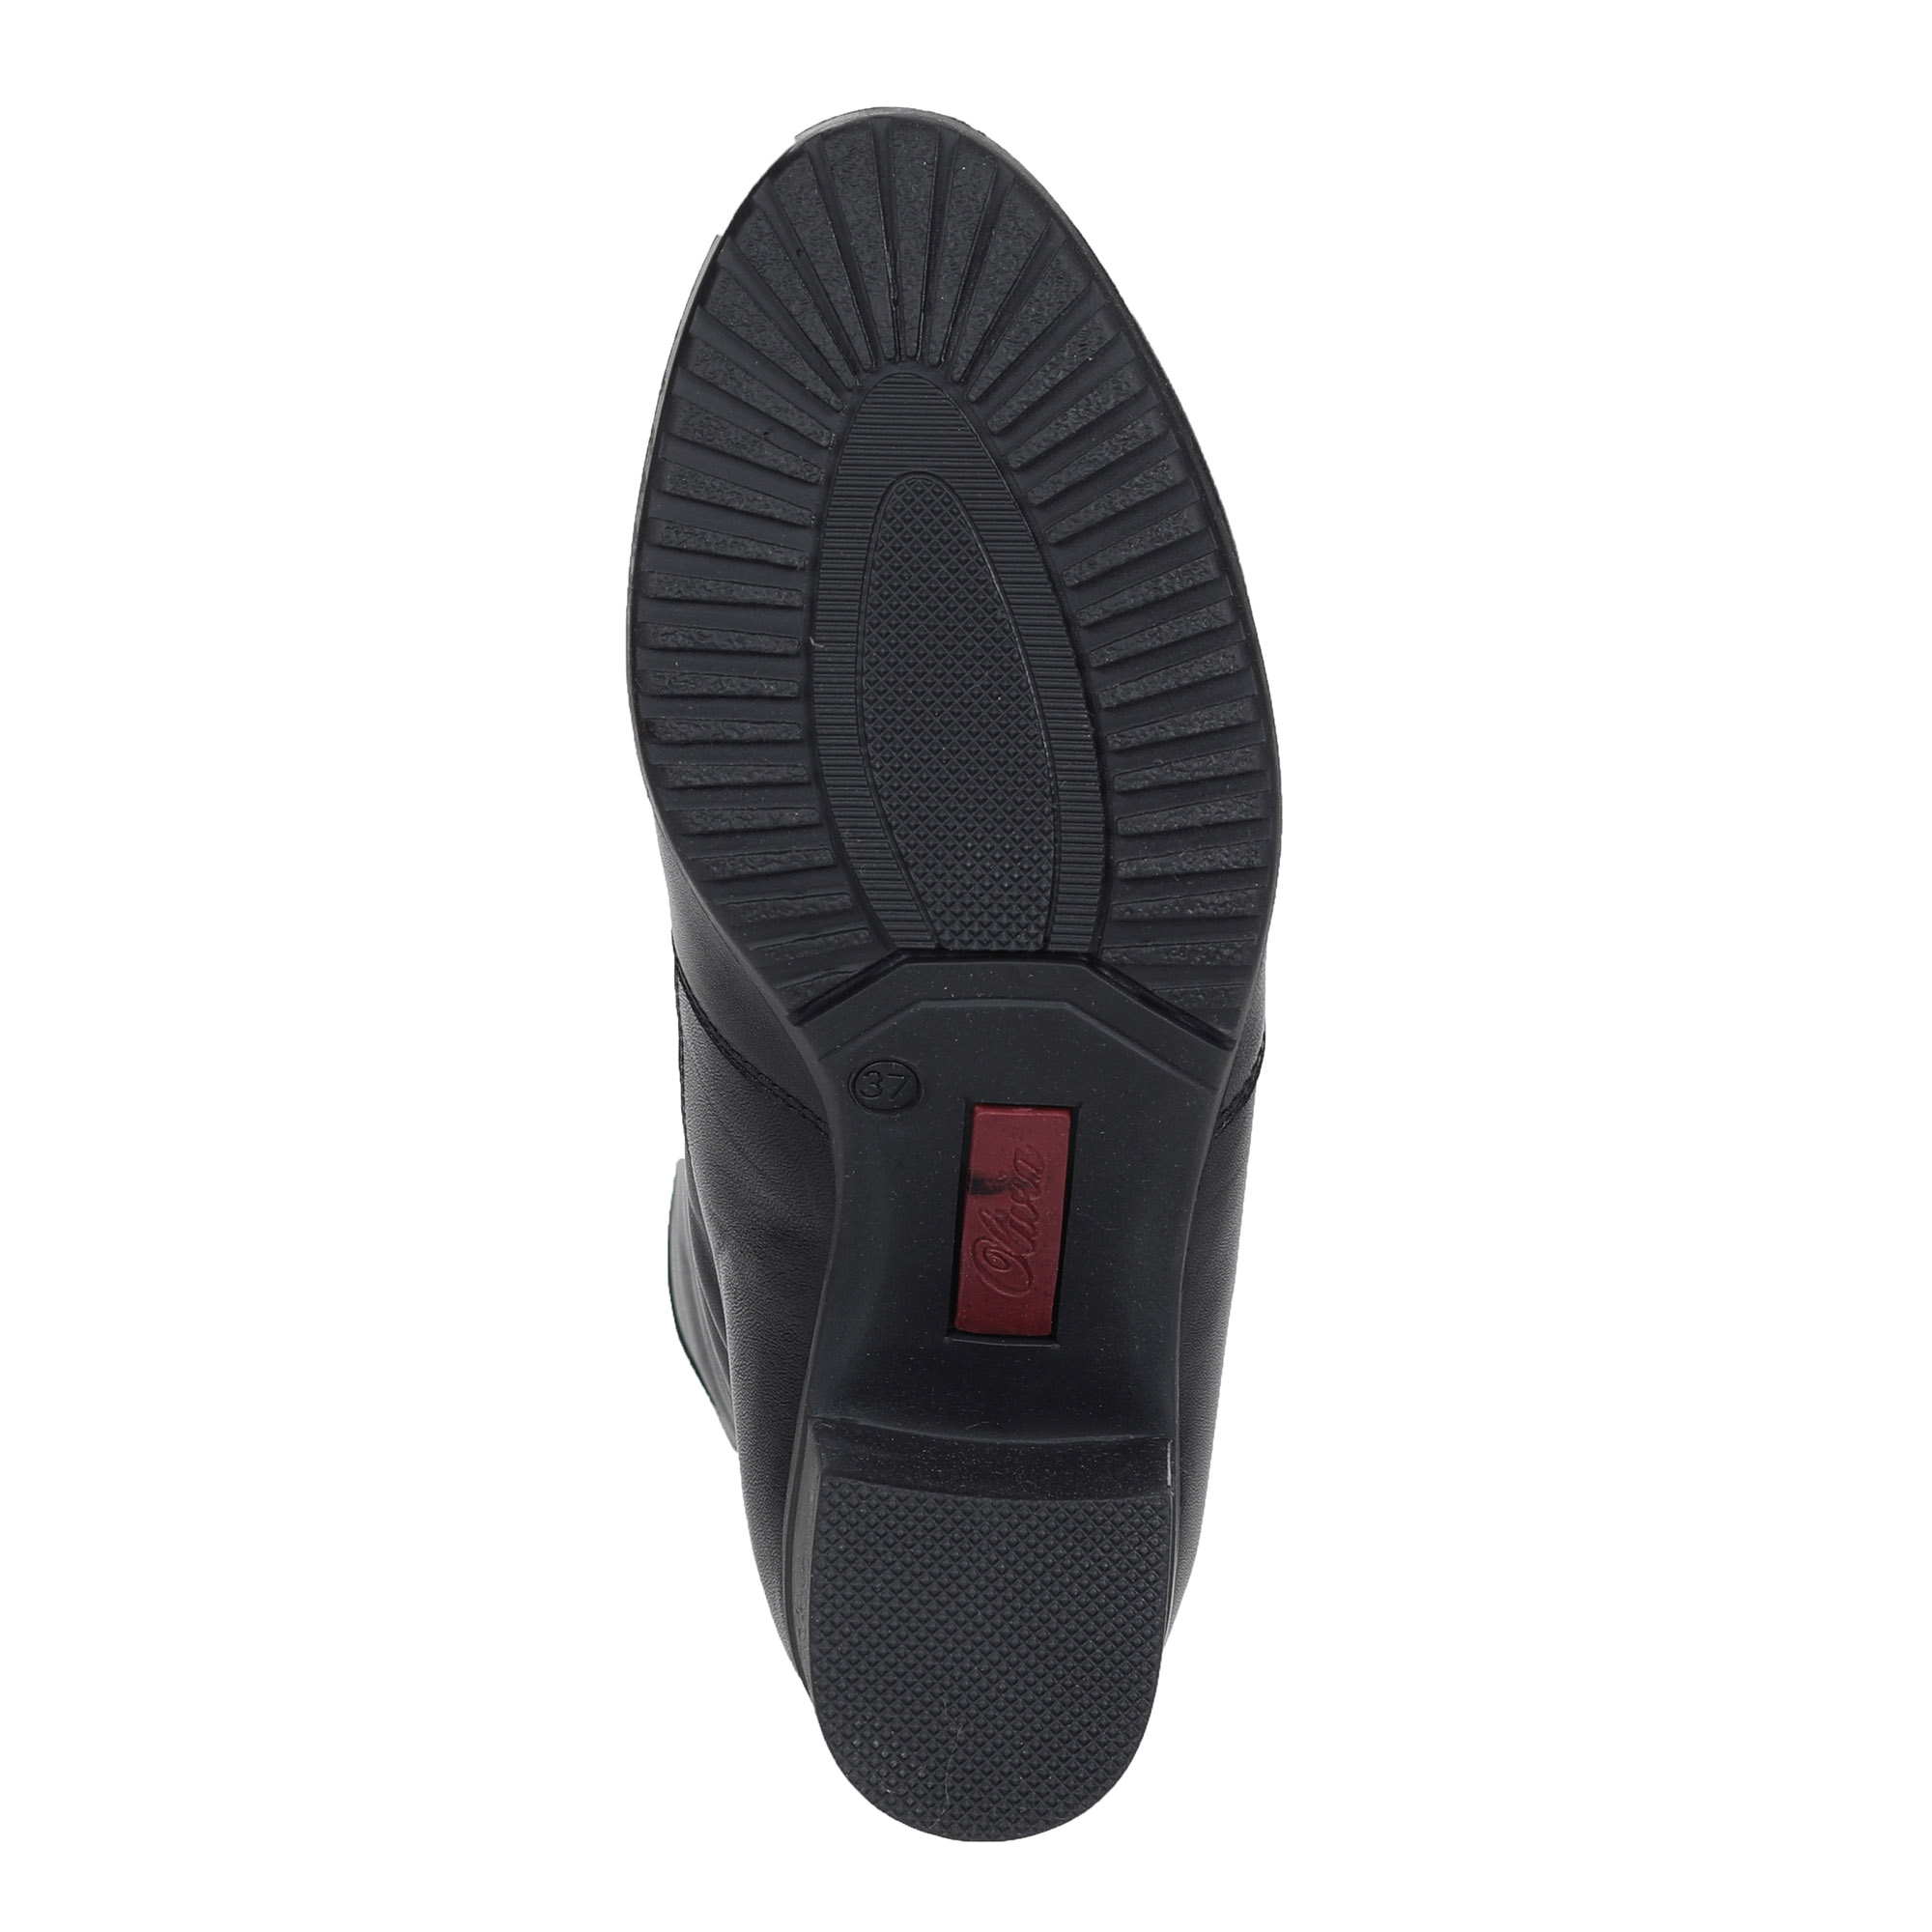 Черные сапоги из кожи на подкладке из натурального меха на устойчивом каблуке Olivia, размер 36, цвет черный - фото 7